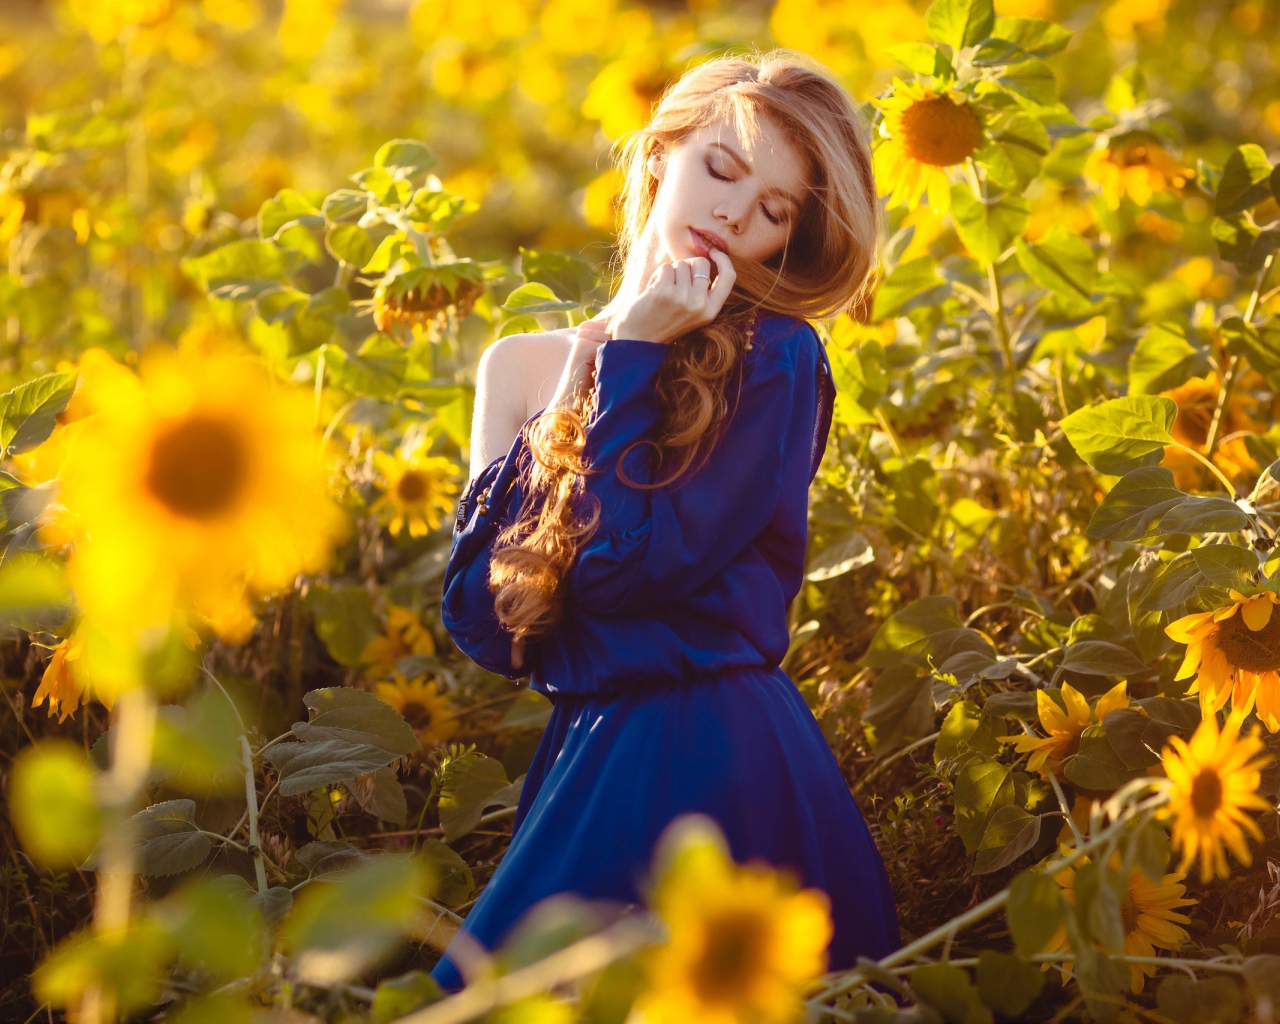 Красивая девушка в голубом платье в поле подсолнухов 